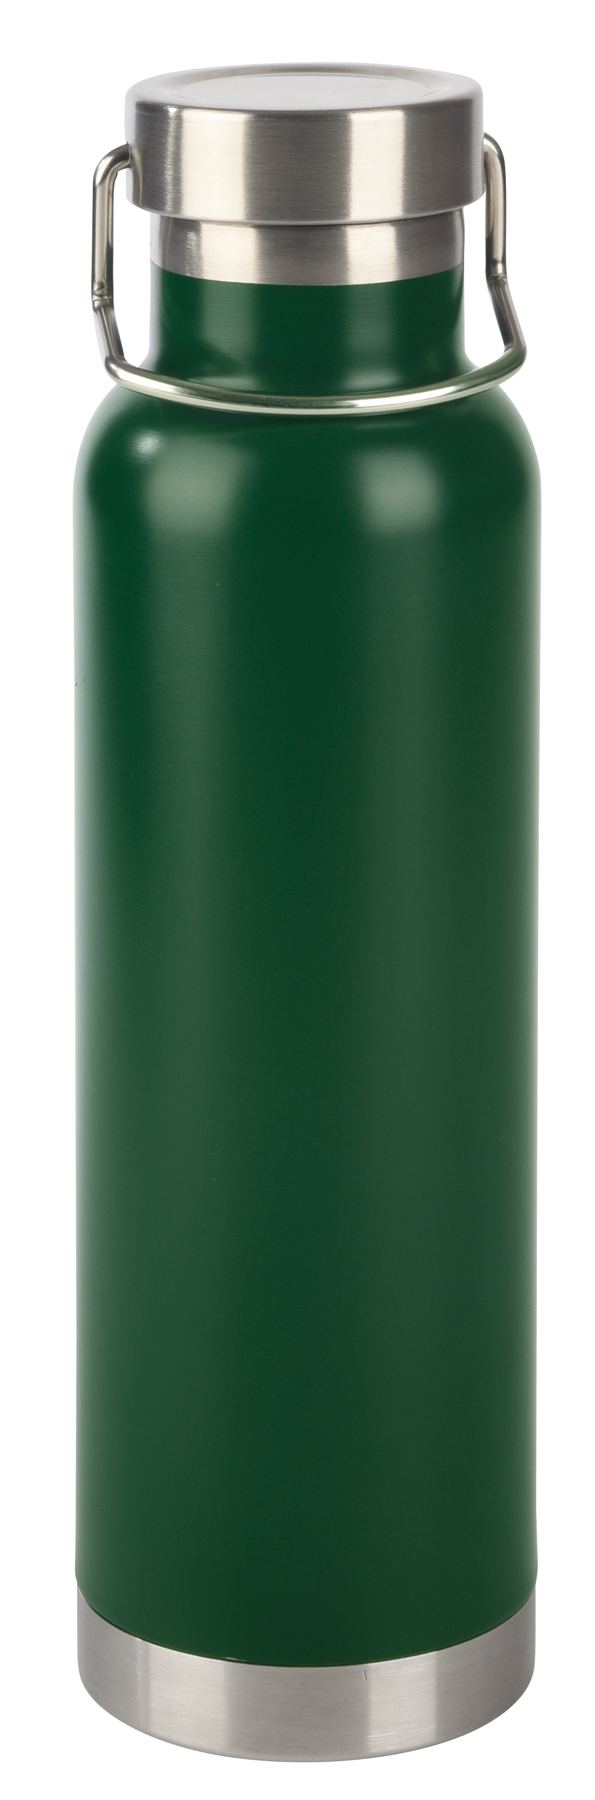 Vakuum-Isolierflasche MILITARY - Grün